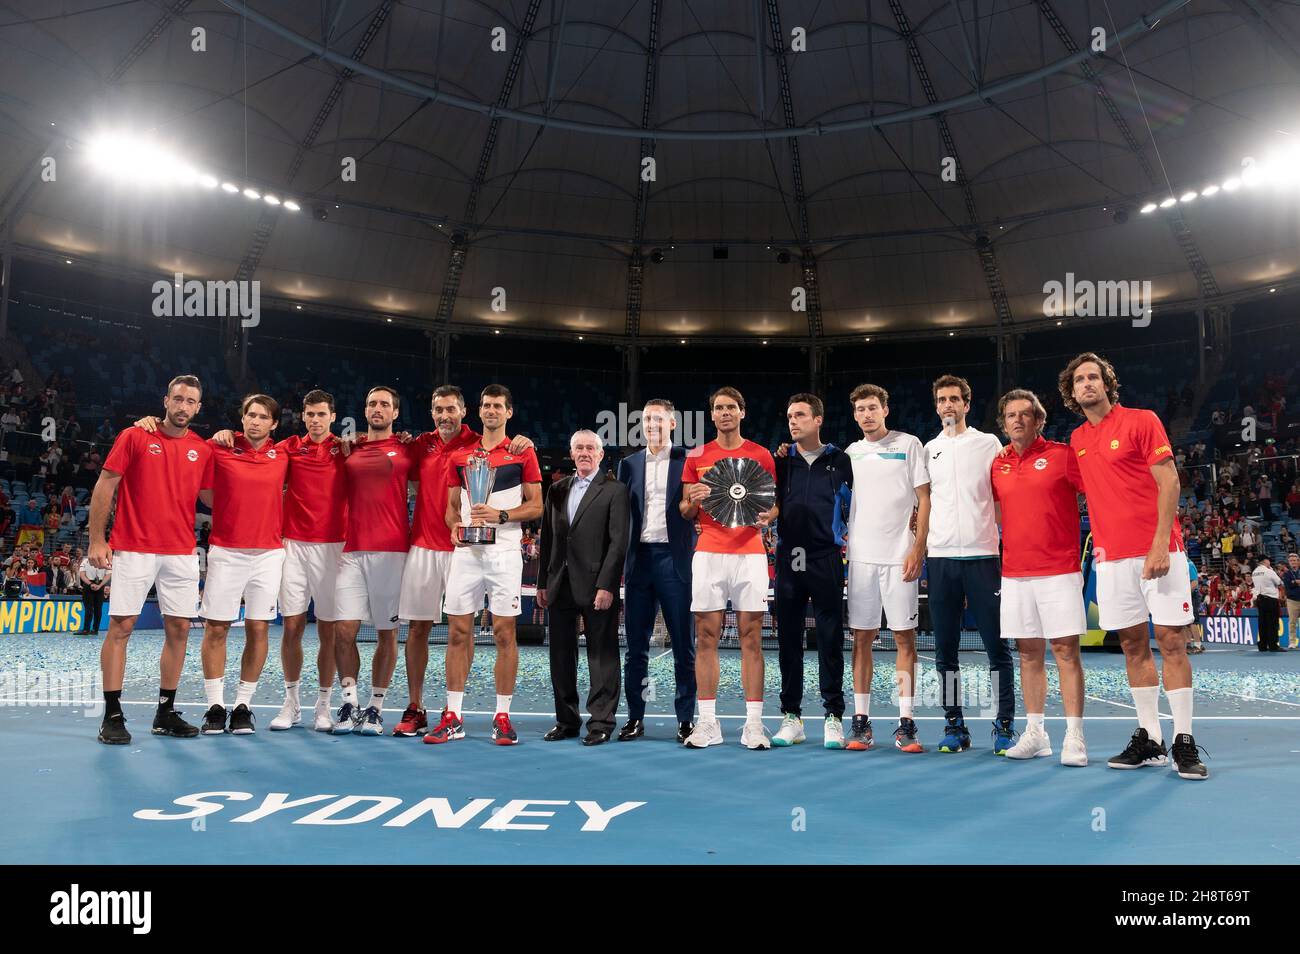 SYDNEY, AUSTRALIE - JANVIER 12 : l'équipe de Serbie avec le trophée des gagnants et l'équipe d'Espagne avec le trophée des coureurs à la coupe ATP tennis 2020 à l'arène Ken Rosewall le 12 janvier 2020 à Sydney, en Australie. Banque D'Images